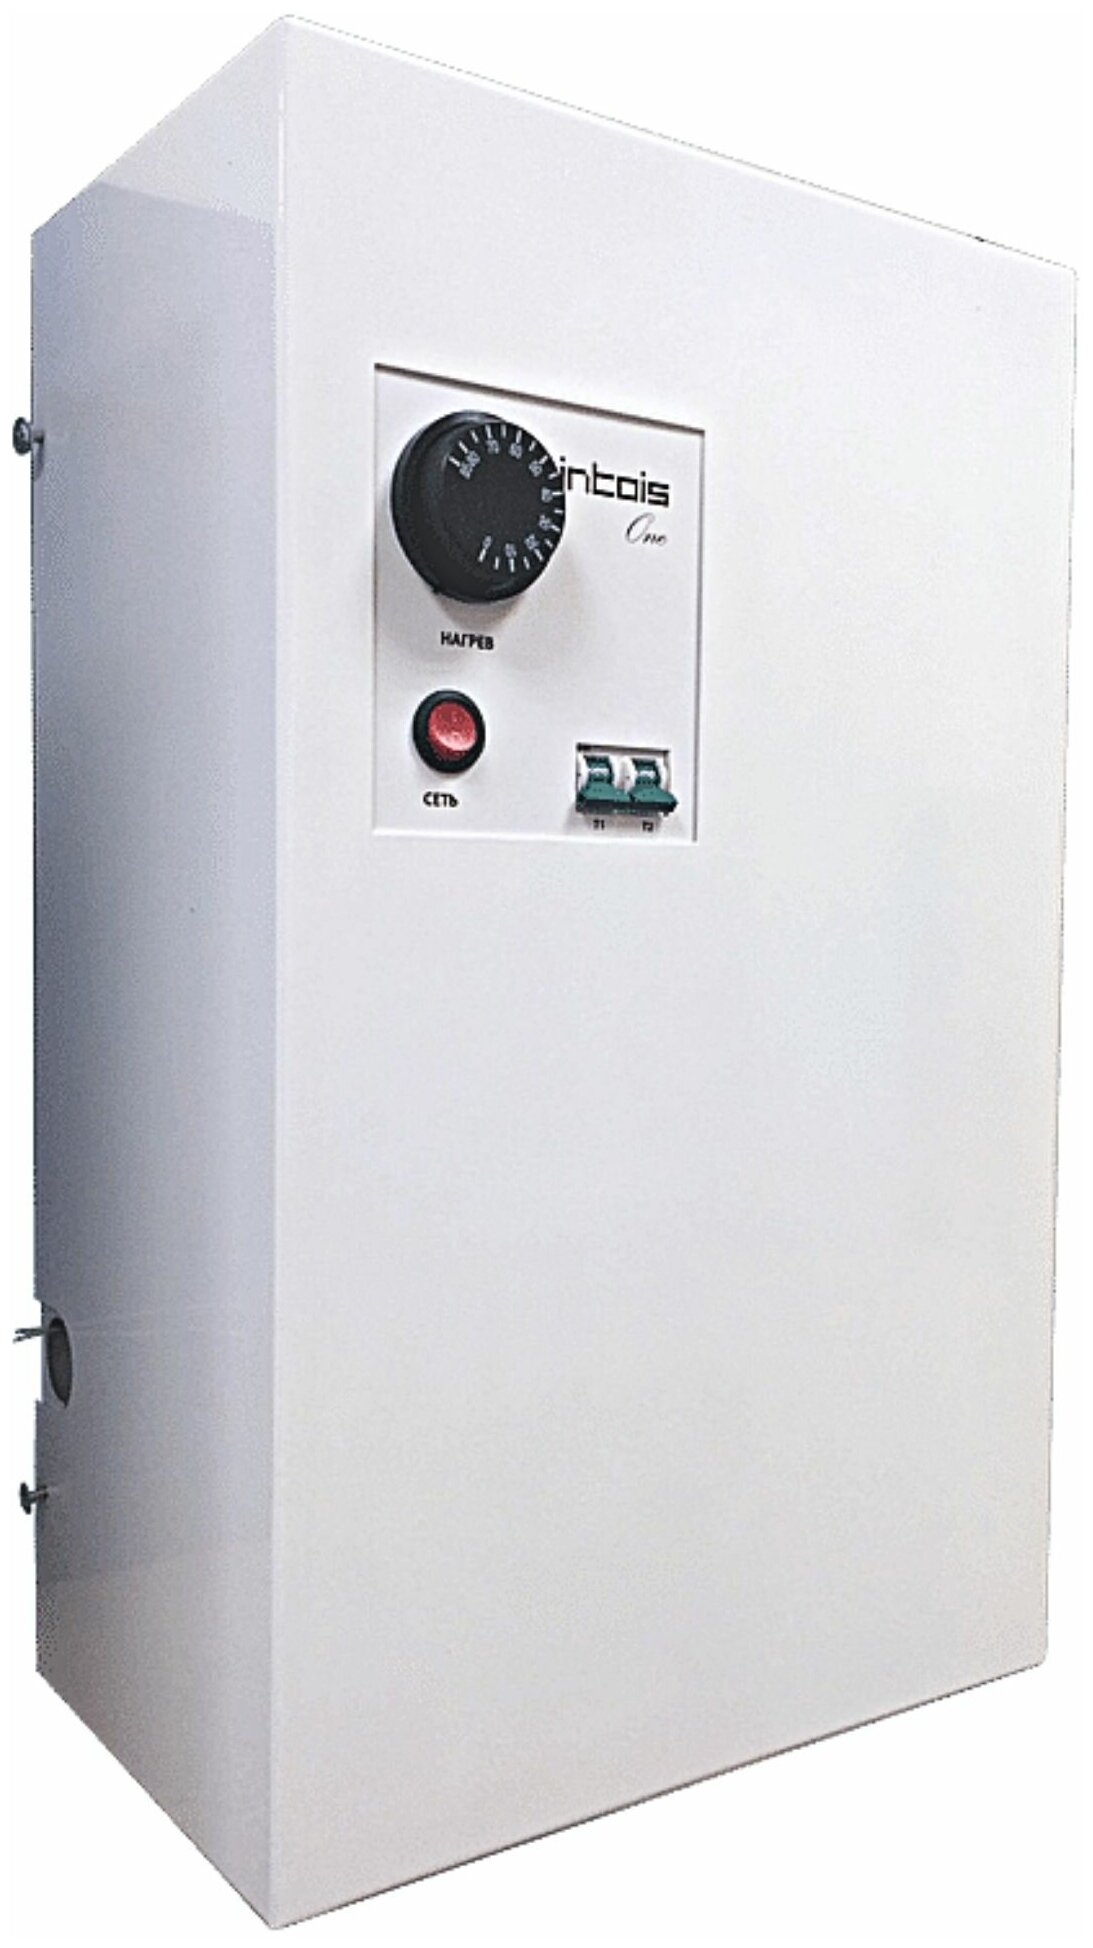 Электрический котел отопления, электрокотел Интоис One, 6 кВт, настенный, одноконтурный.